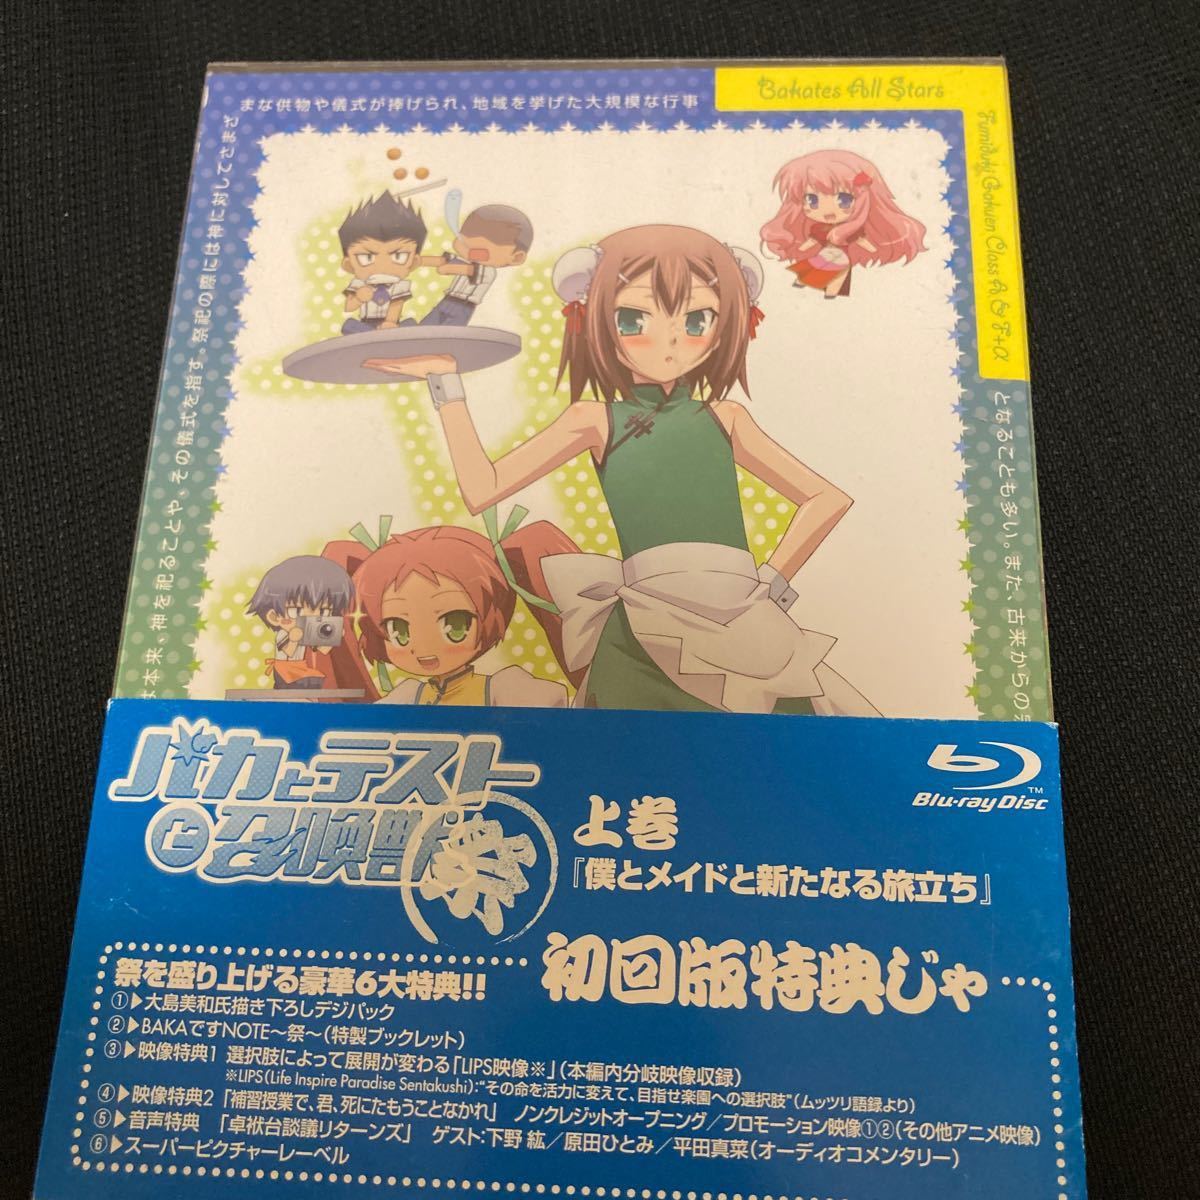 OVA 『バカとテストと召喚獣 〜祭〜』 上巻と下巻[Blu-ray]